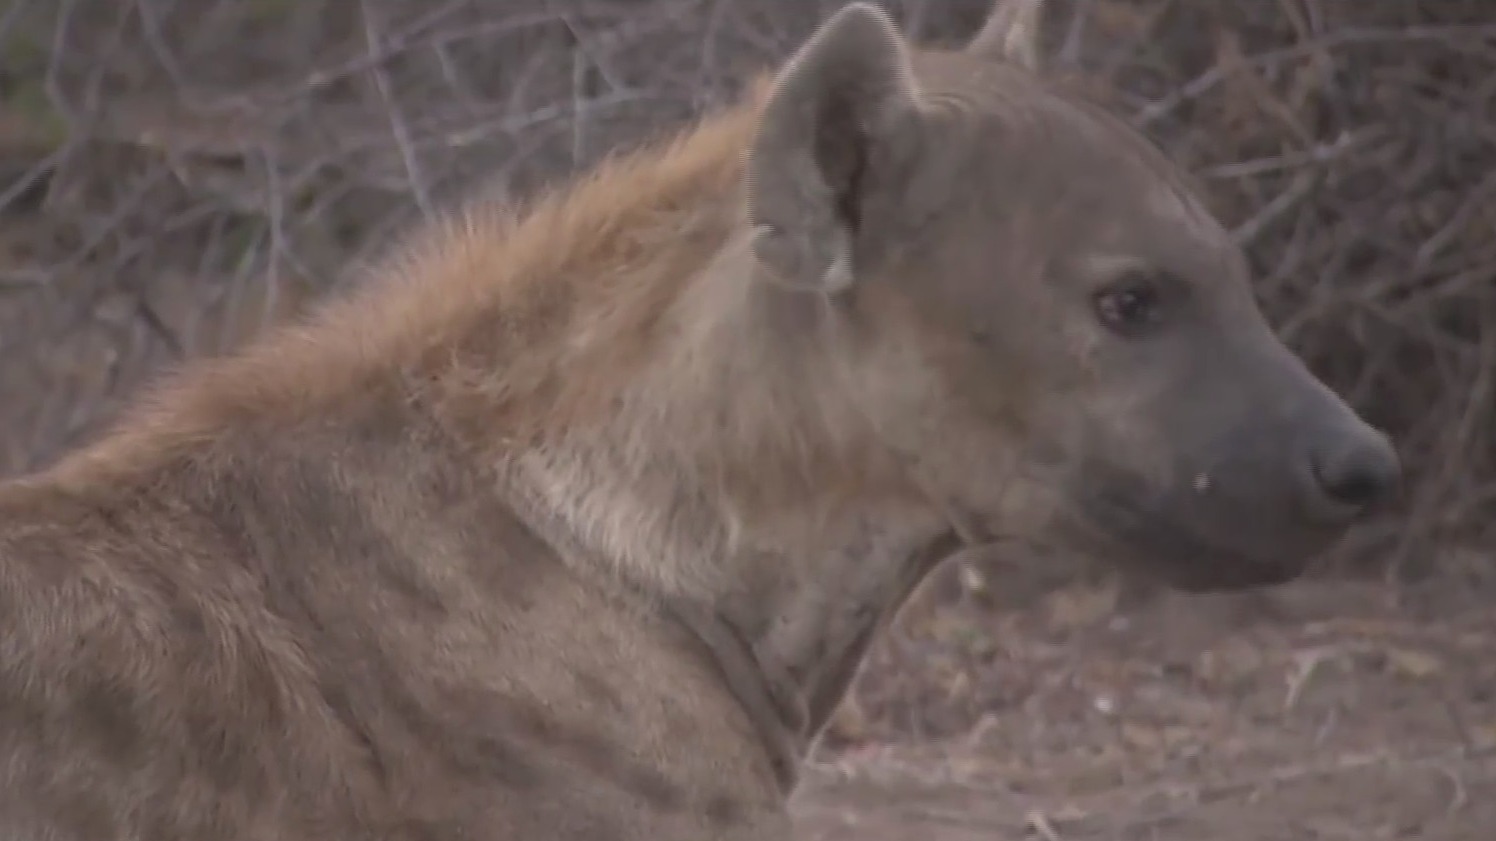 toxoplasmosis vuelve a las hienas mas agresivas